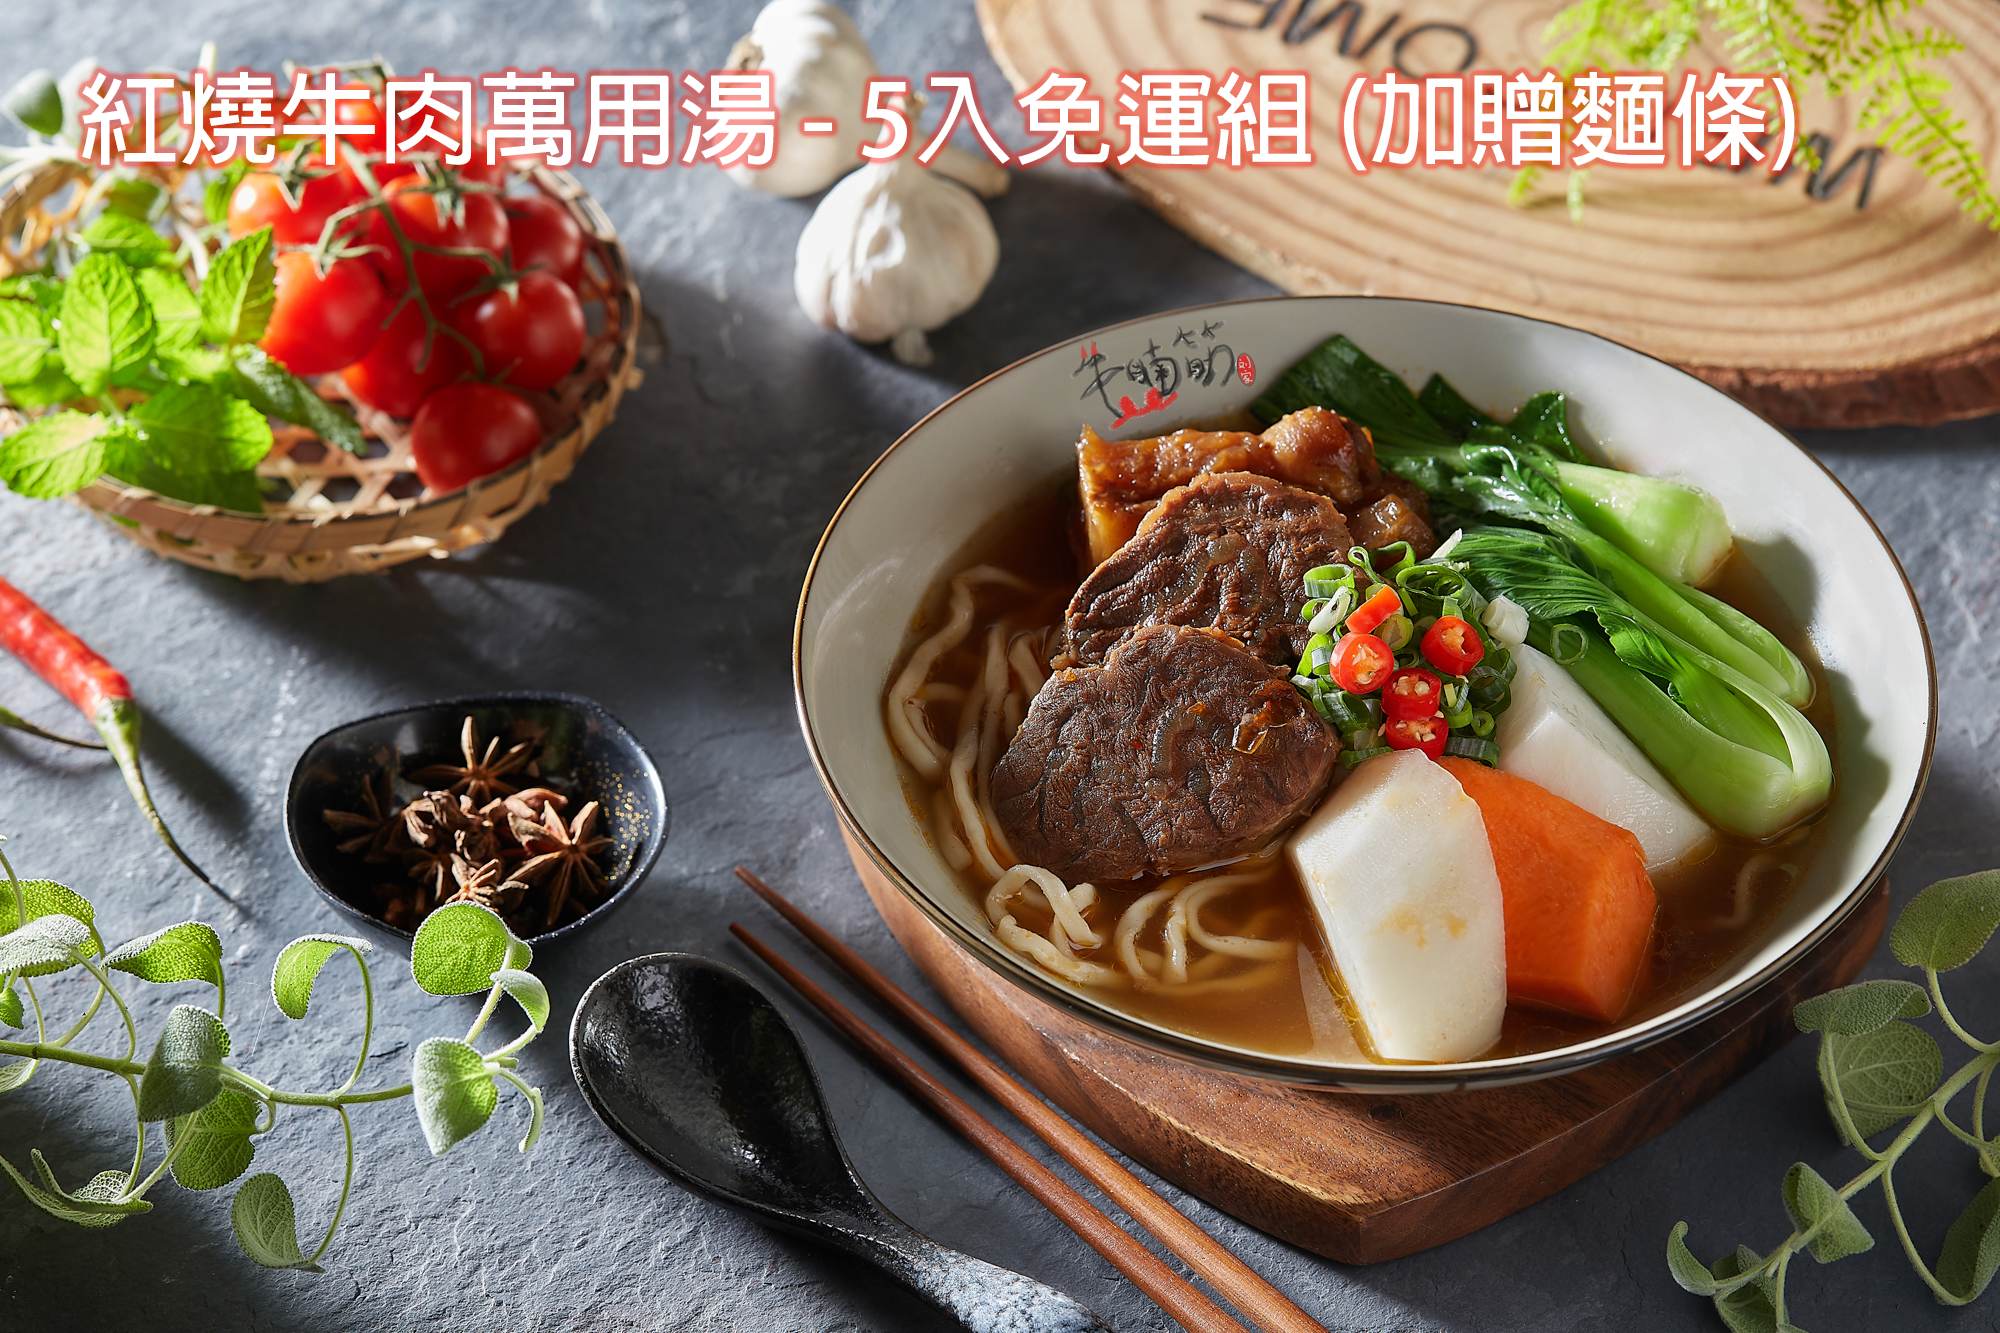 【防疫優惠組】紅燒牛肉萬用湯 - 5入免運 (加贈麵條)